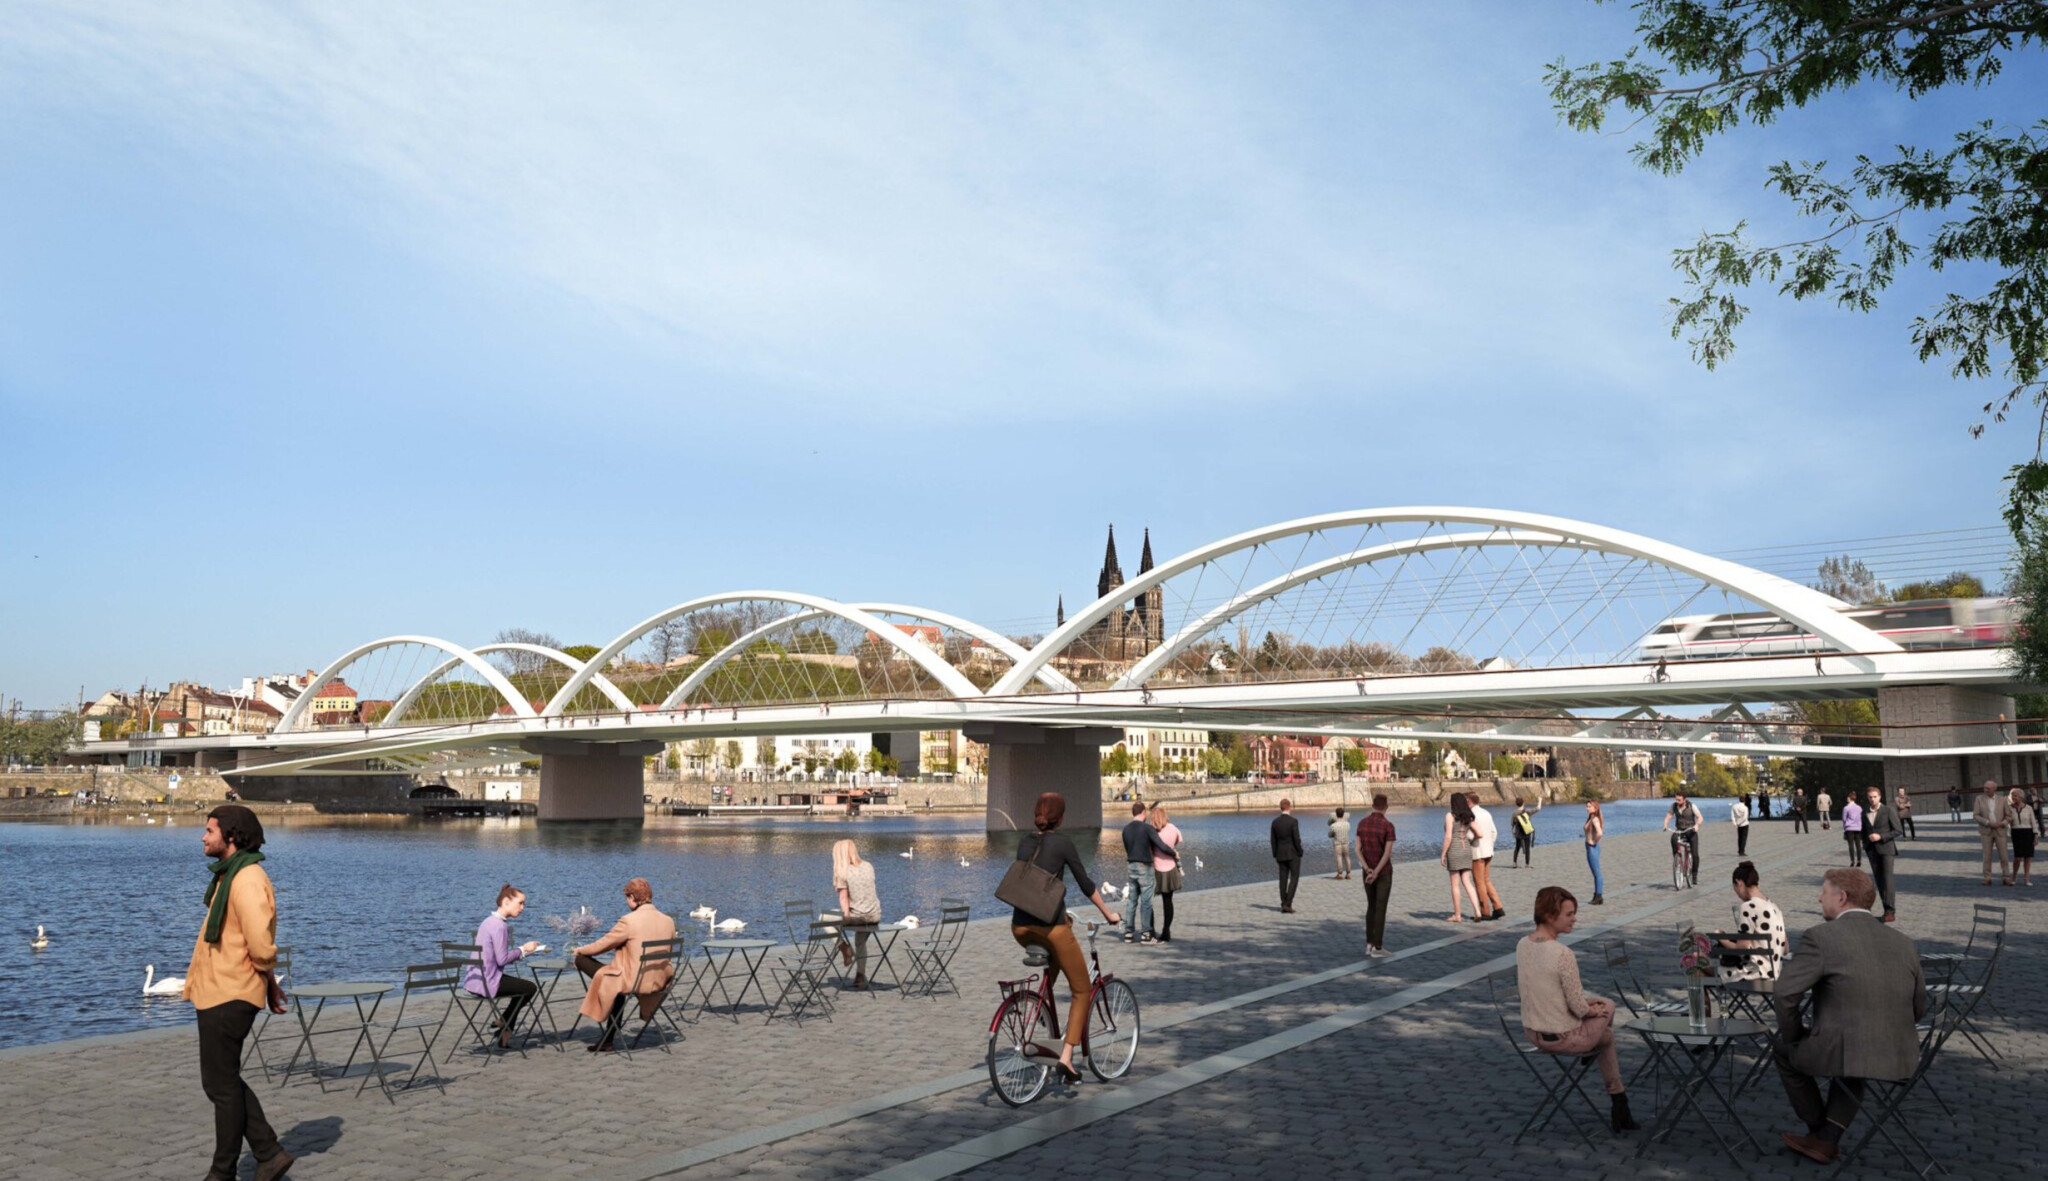 Moc strohý a inženýrský? Návrh nového železničního mostu přes Vltavu budí vášně